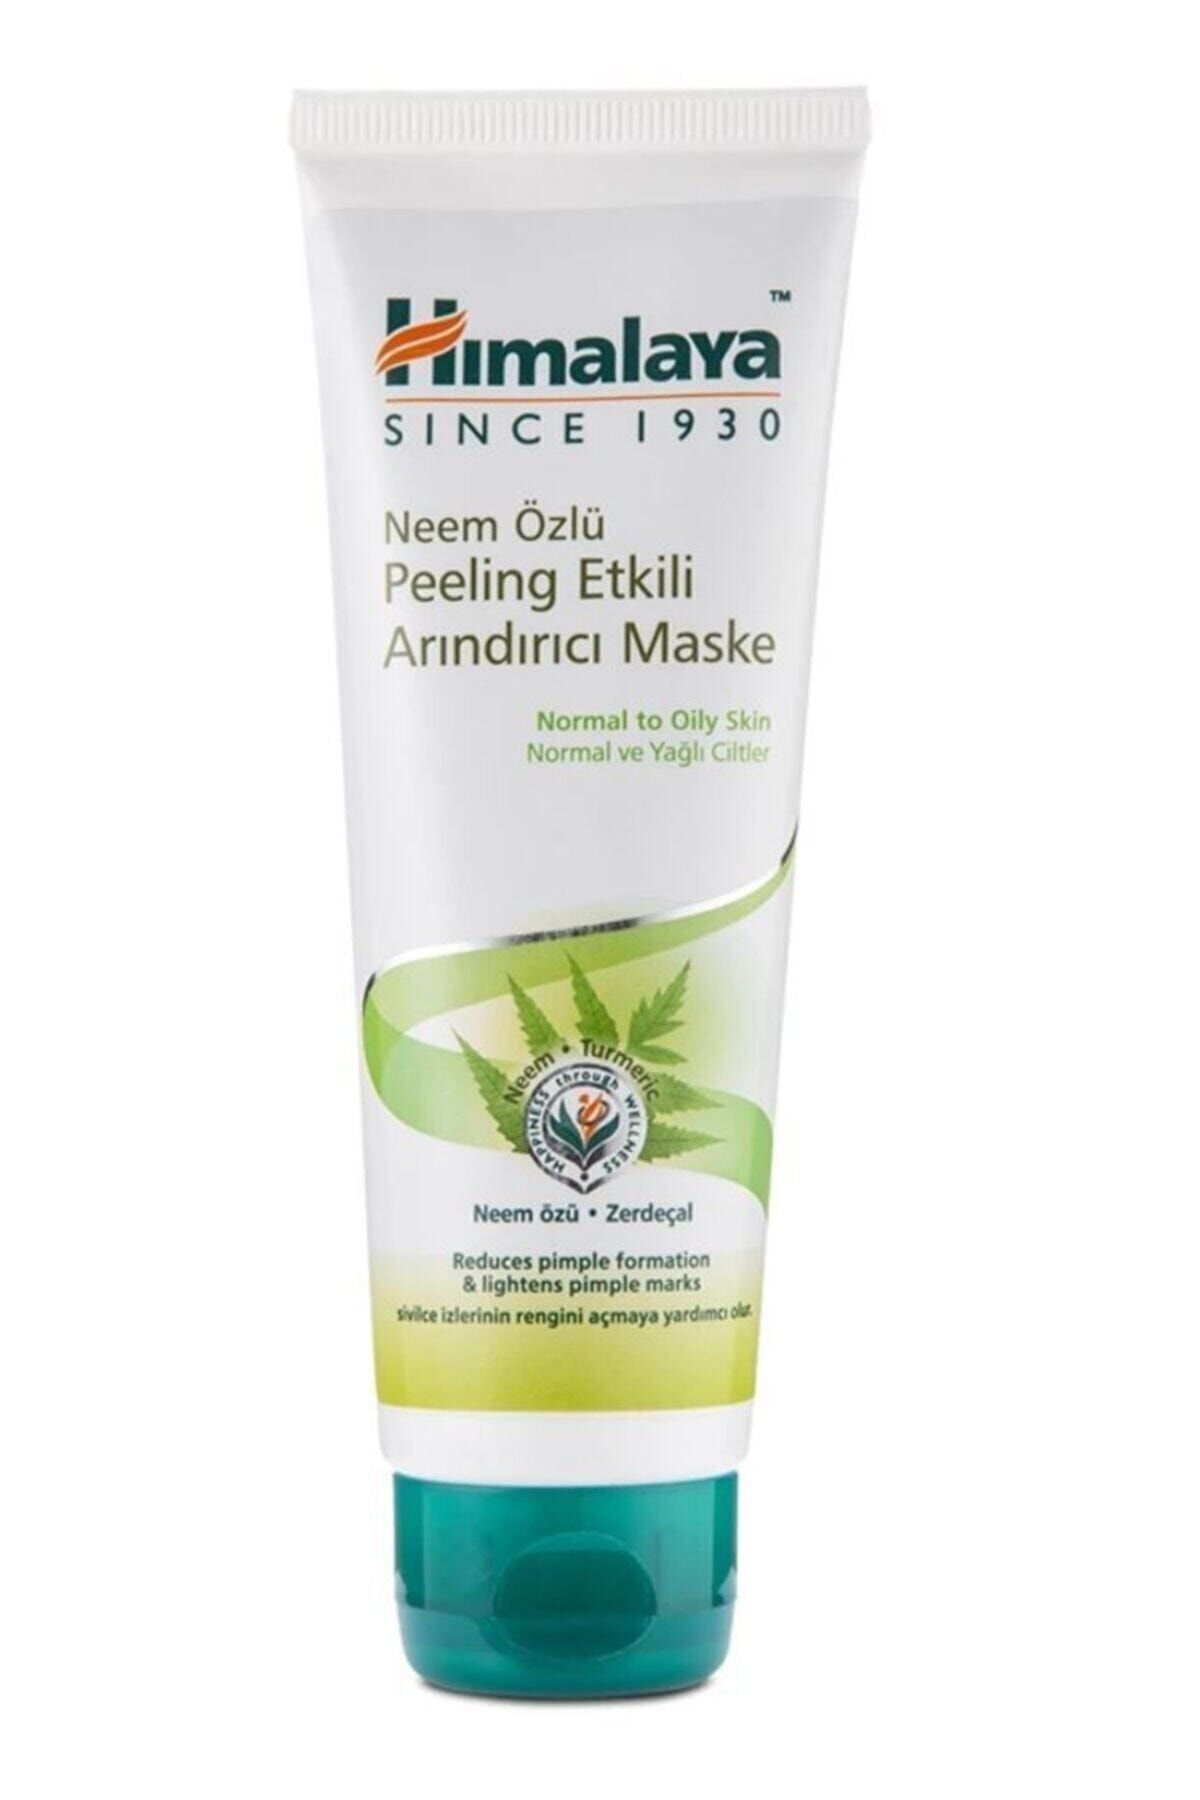 Himalaya Neem Özlü Peeling Etkili Arındırıcı Maske 75 ml